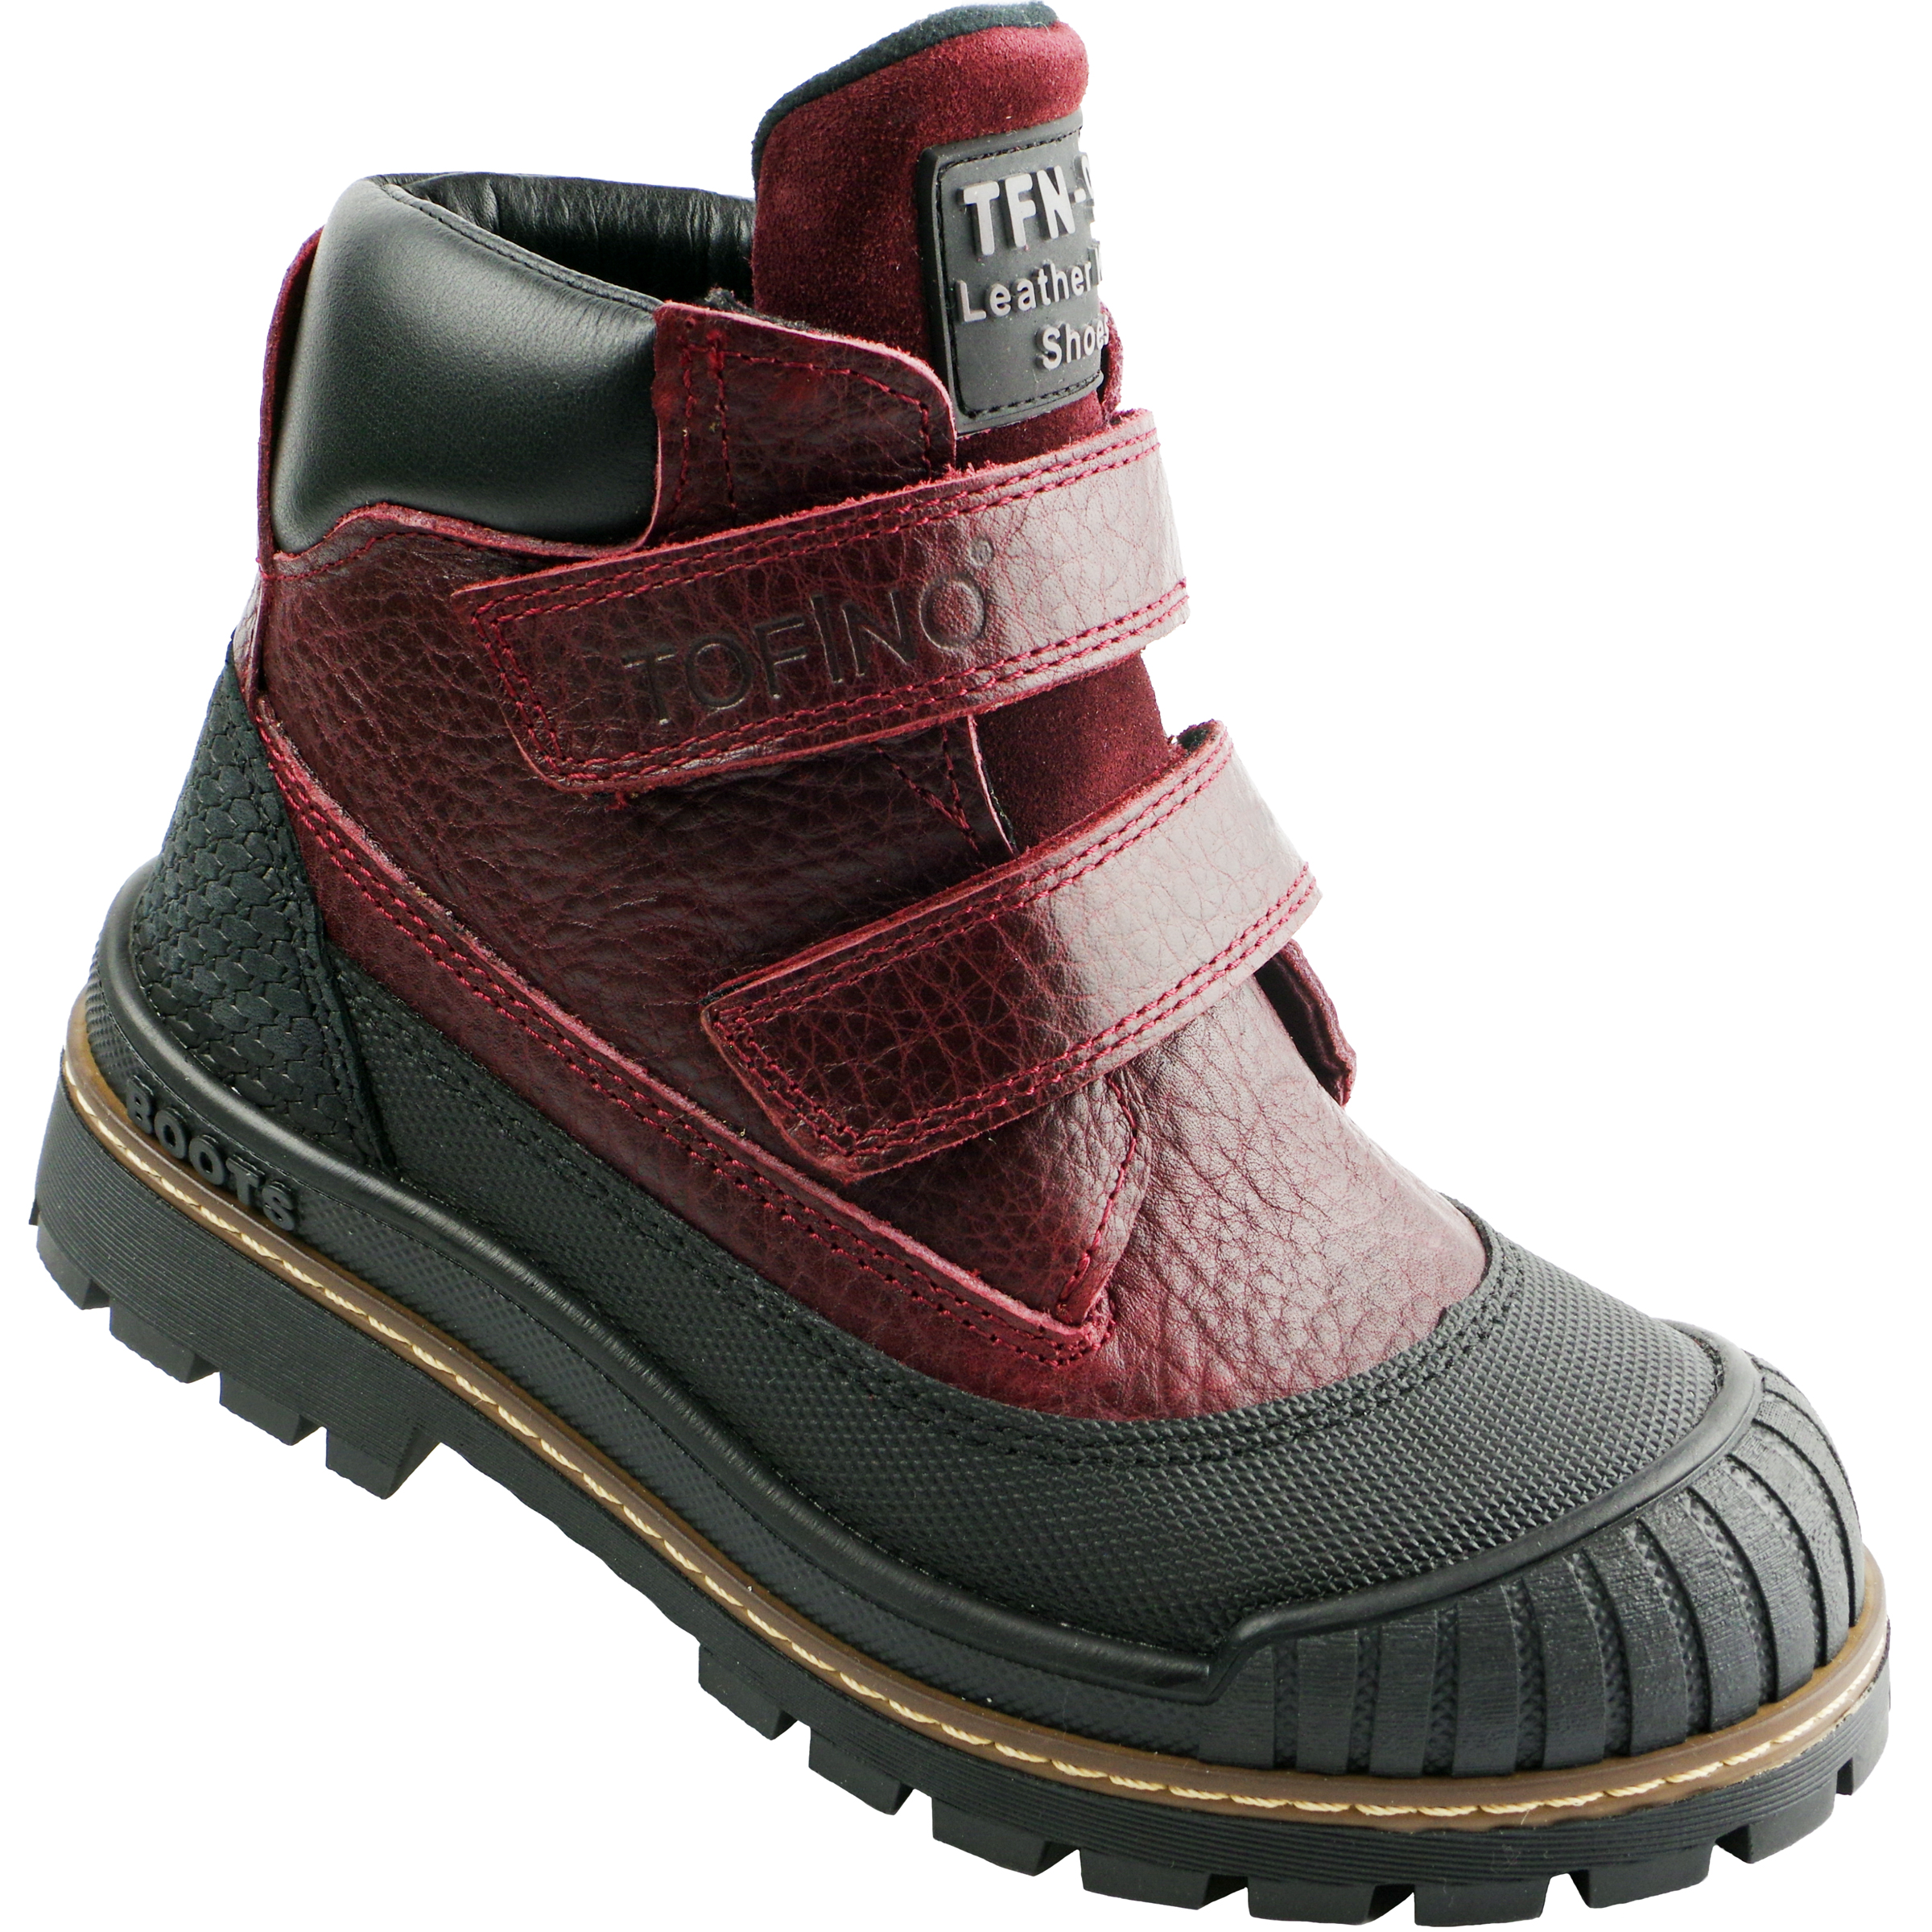 Демисезонные ботинки (2149) материал Нубук, цвет Бордовый  для девочки 31-36 размеры – Sole Kids